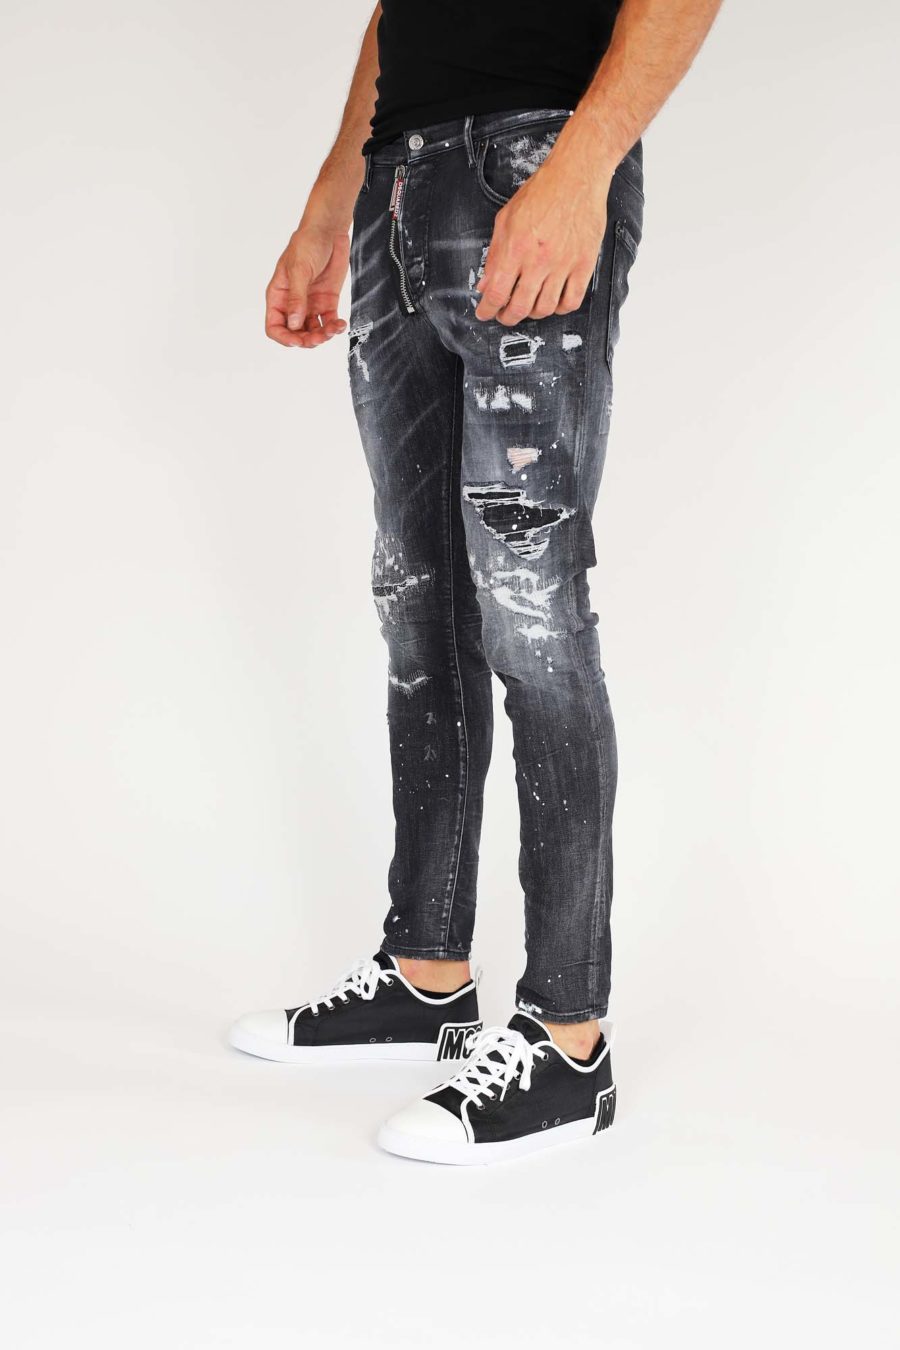 Jeans "Super Twinky Jean" con cremallera - IMG 9858